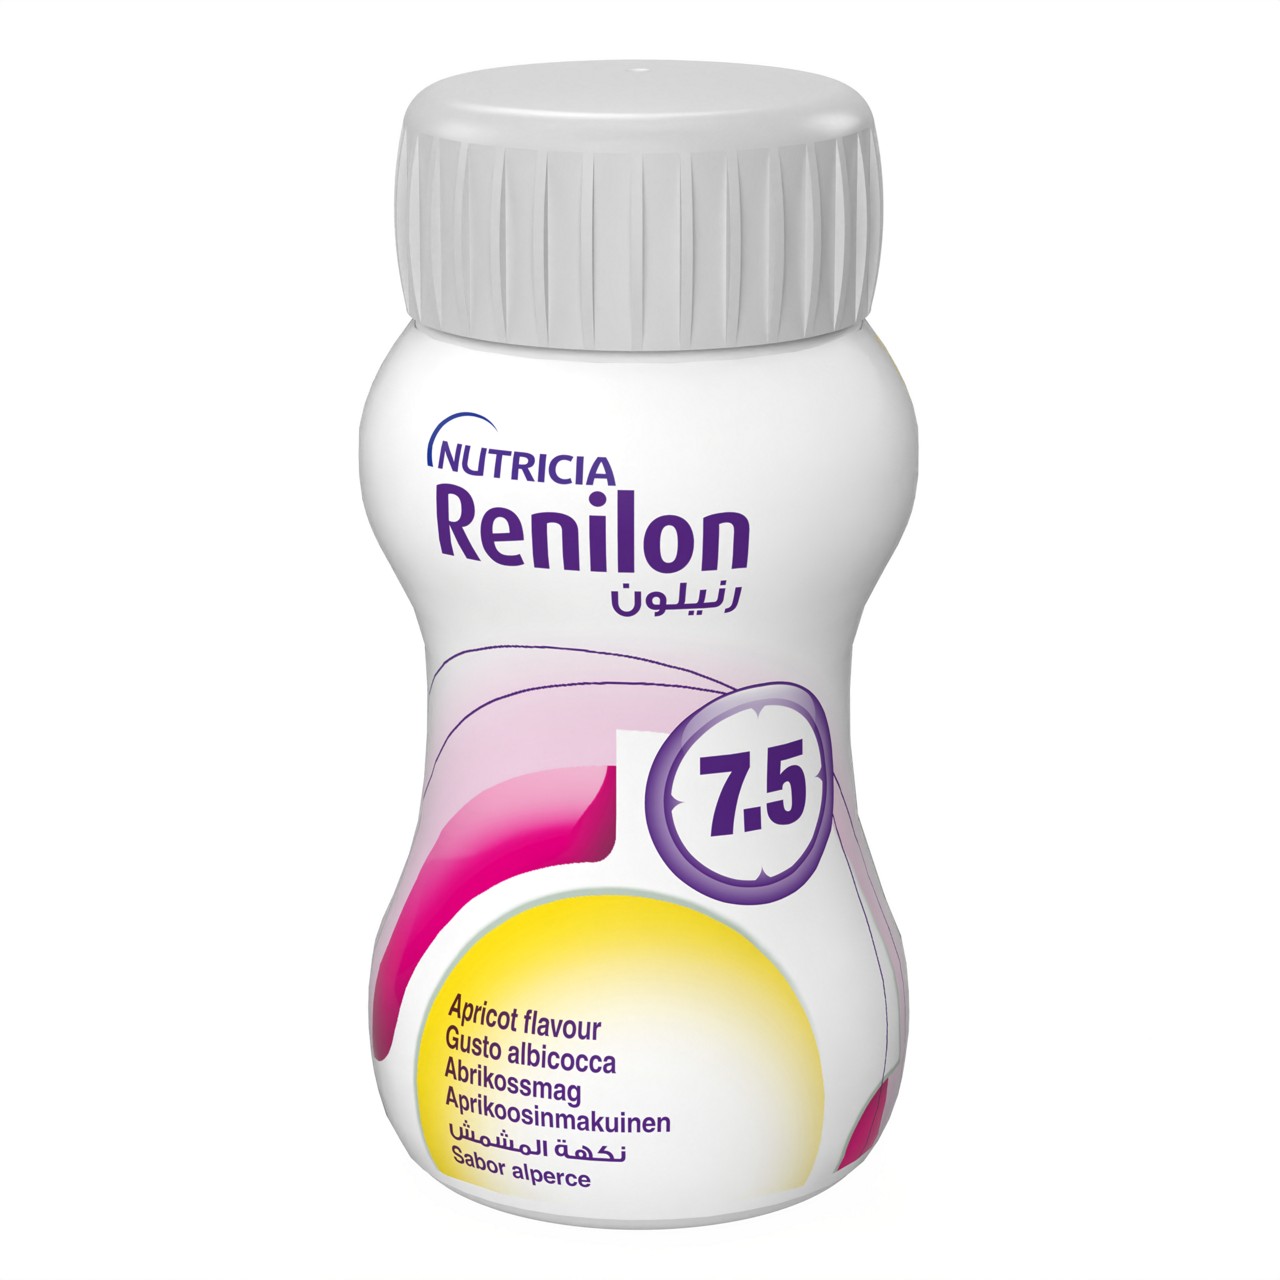 en-GB,Renilon 7.5